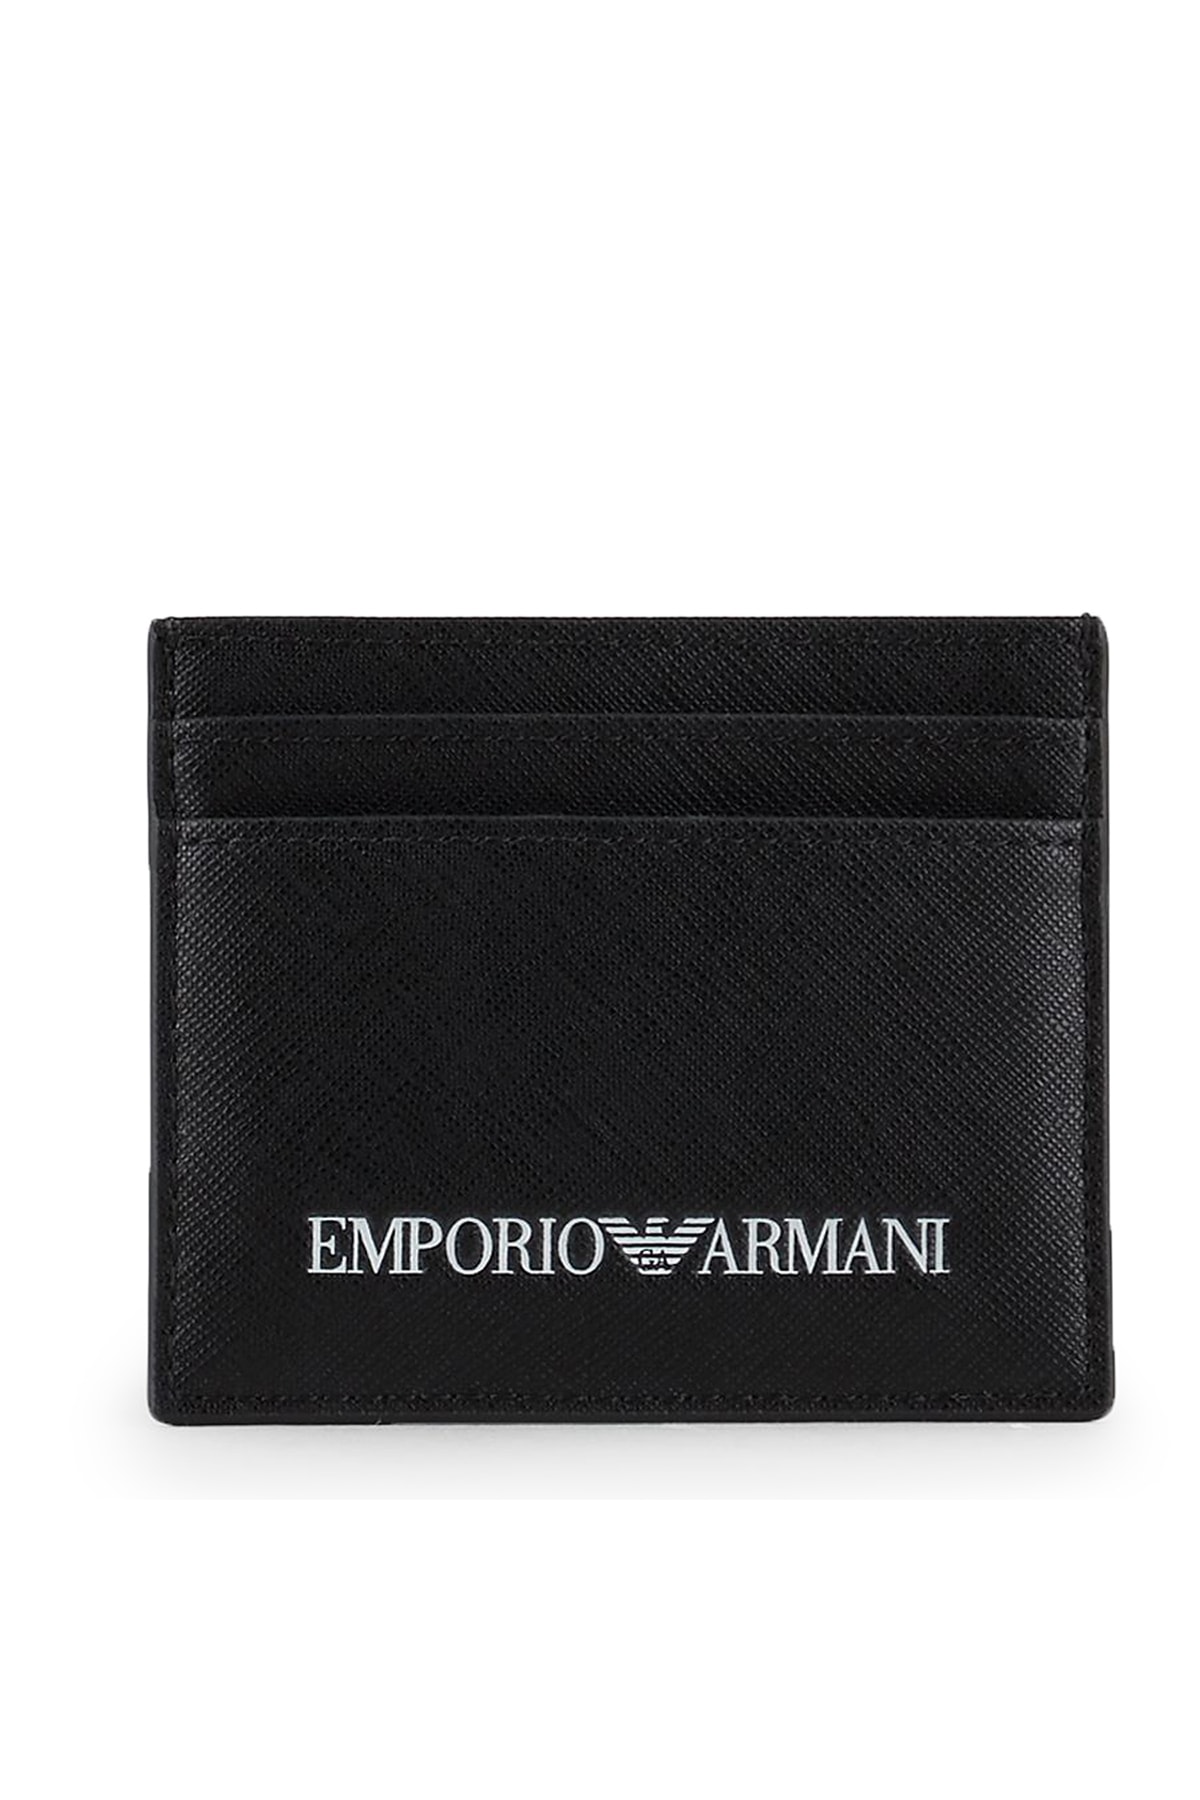 کیف پول ، کیف کارت مردانه سیاه برند emporio armani Y4R324 Y020V 81072